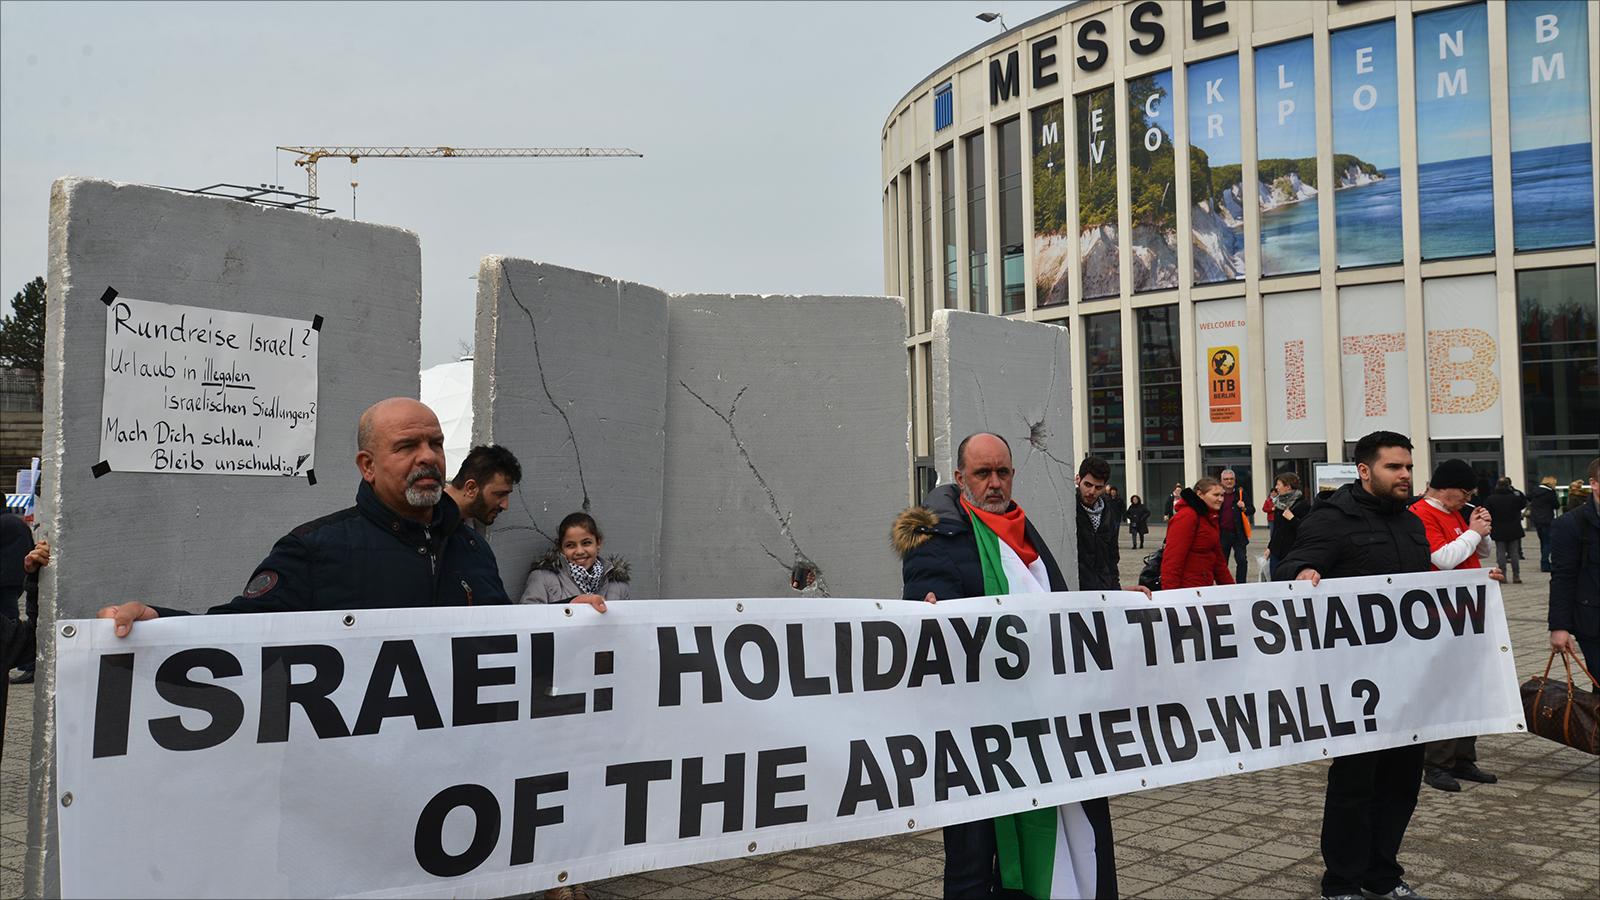 المشاركون في الوقفة وضعوا مجسما لجدار الفصل العنصري أمام بوابة بورصة برلين للفت أنظار الزائرين إلى معاناة الفلسطينيين (الجزيرة)